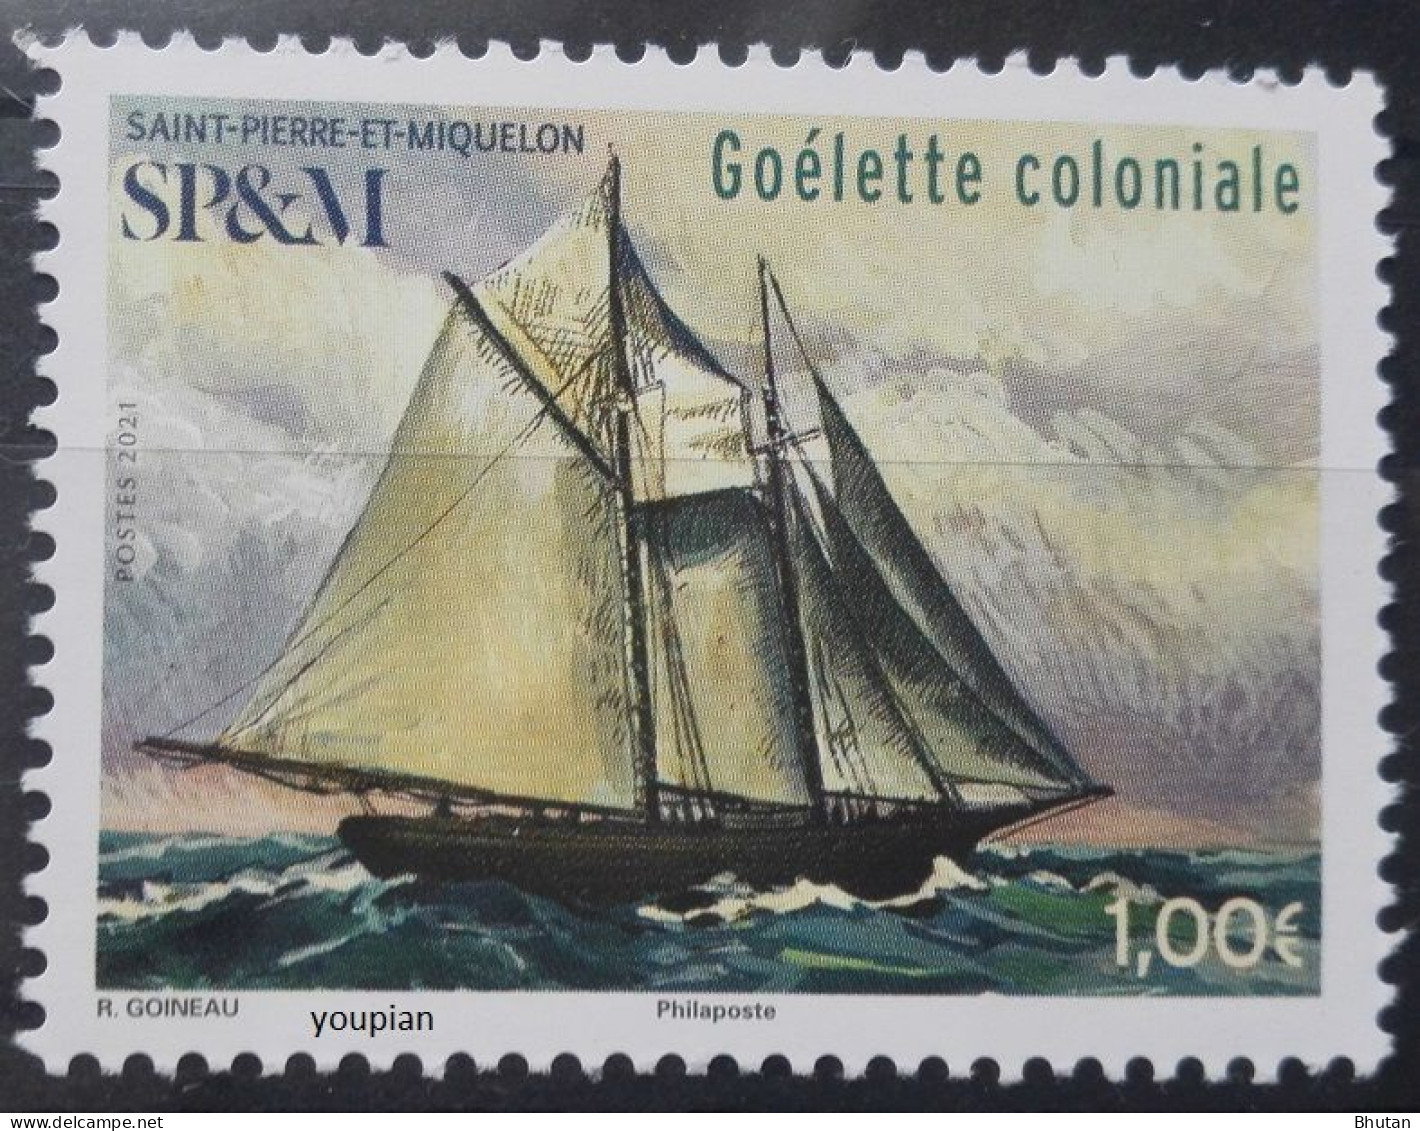 St. Pierre And Miquelon 2021, Goélette Coloniale Ship, MNH Single Stamp - Ungebraucht